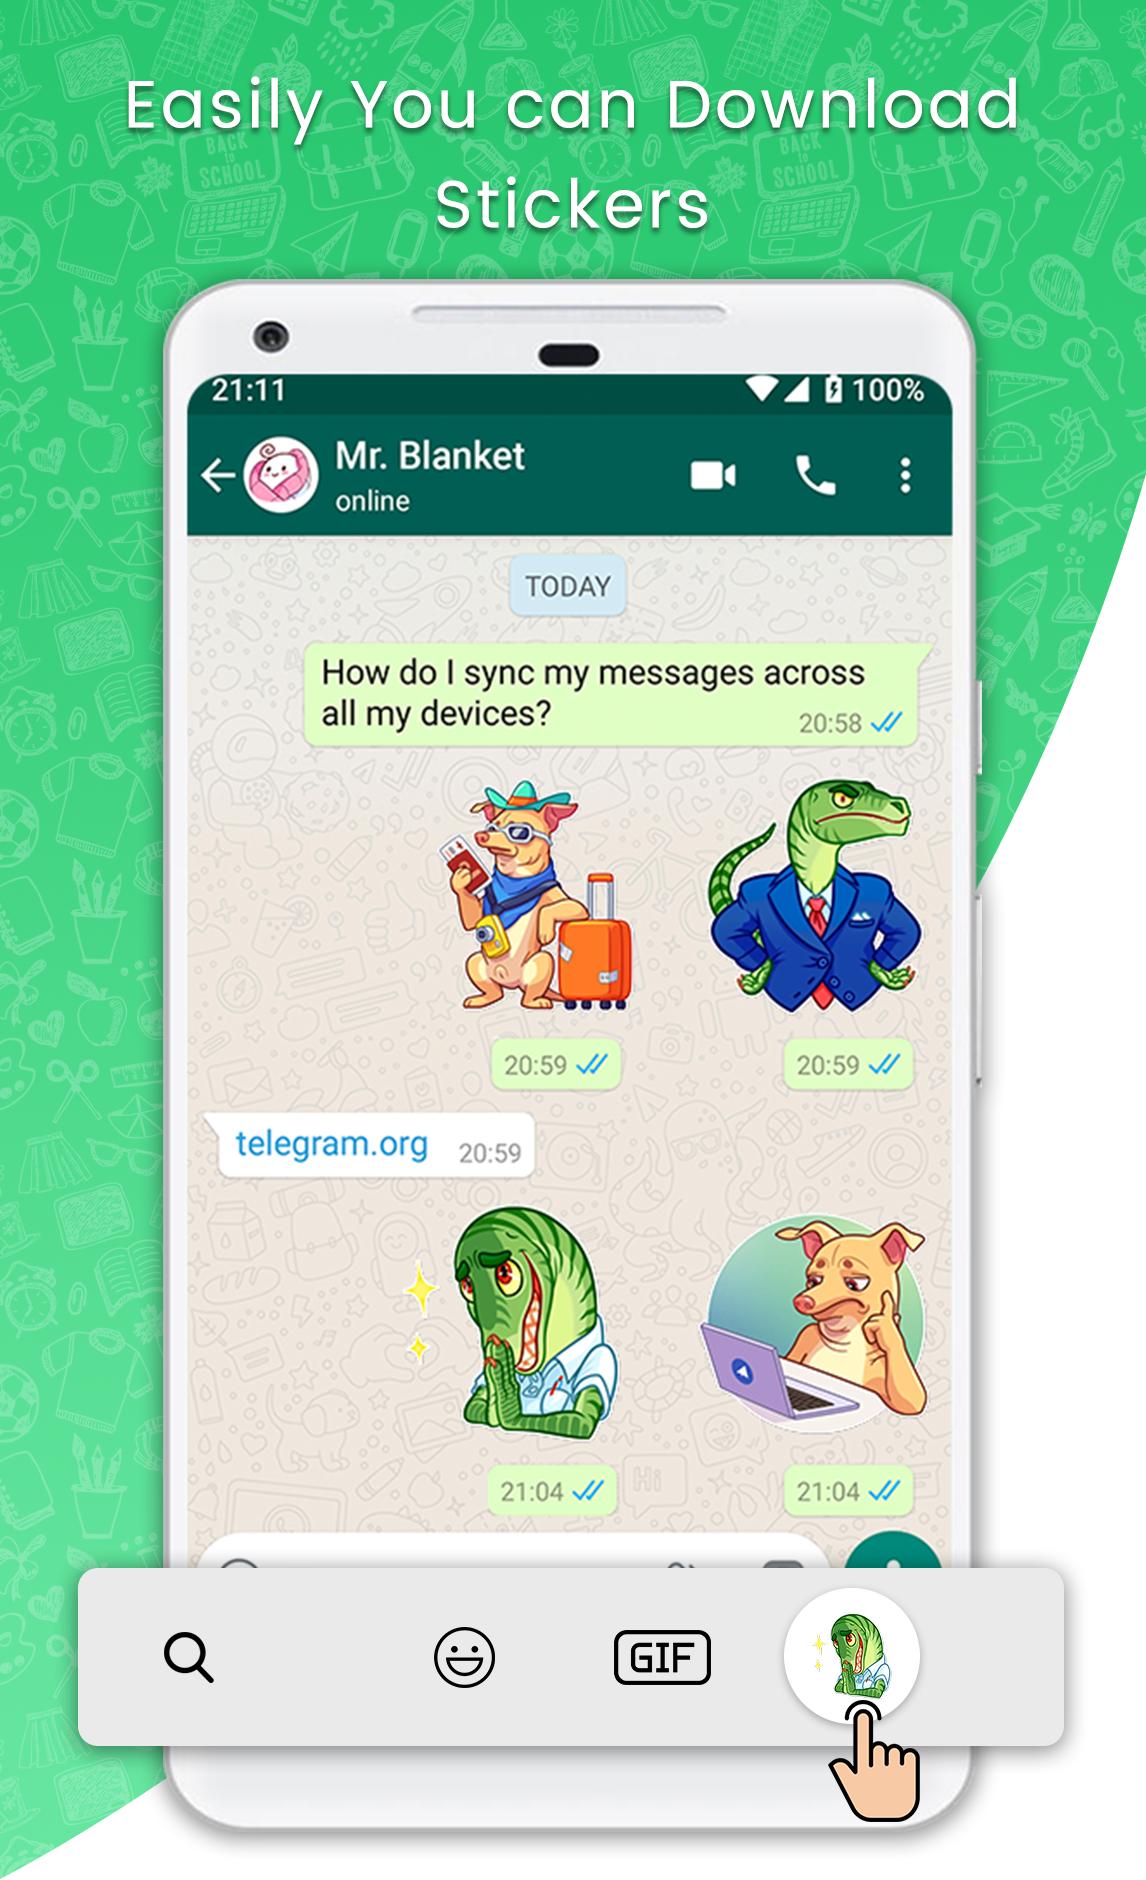 Whatsapp sticker pack maker Main Image